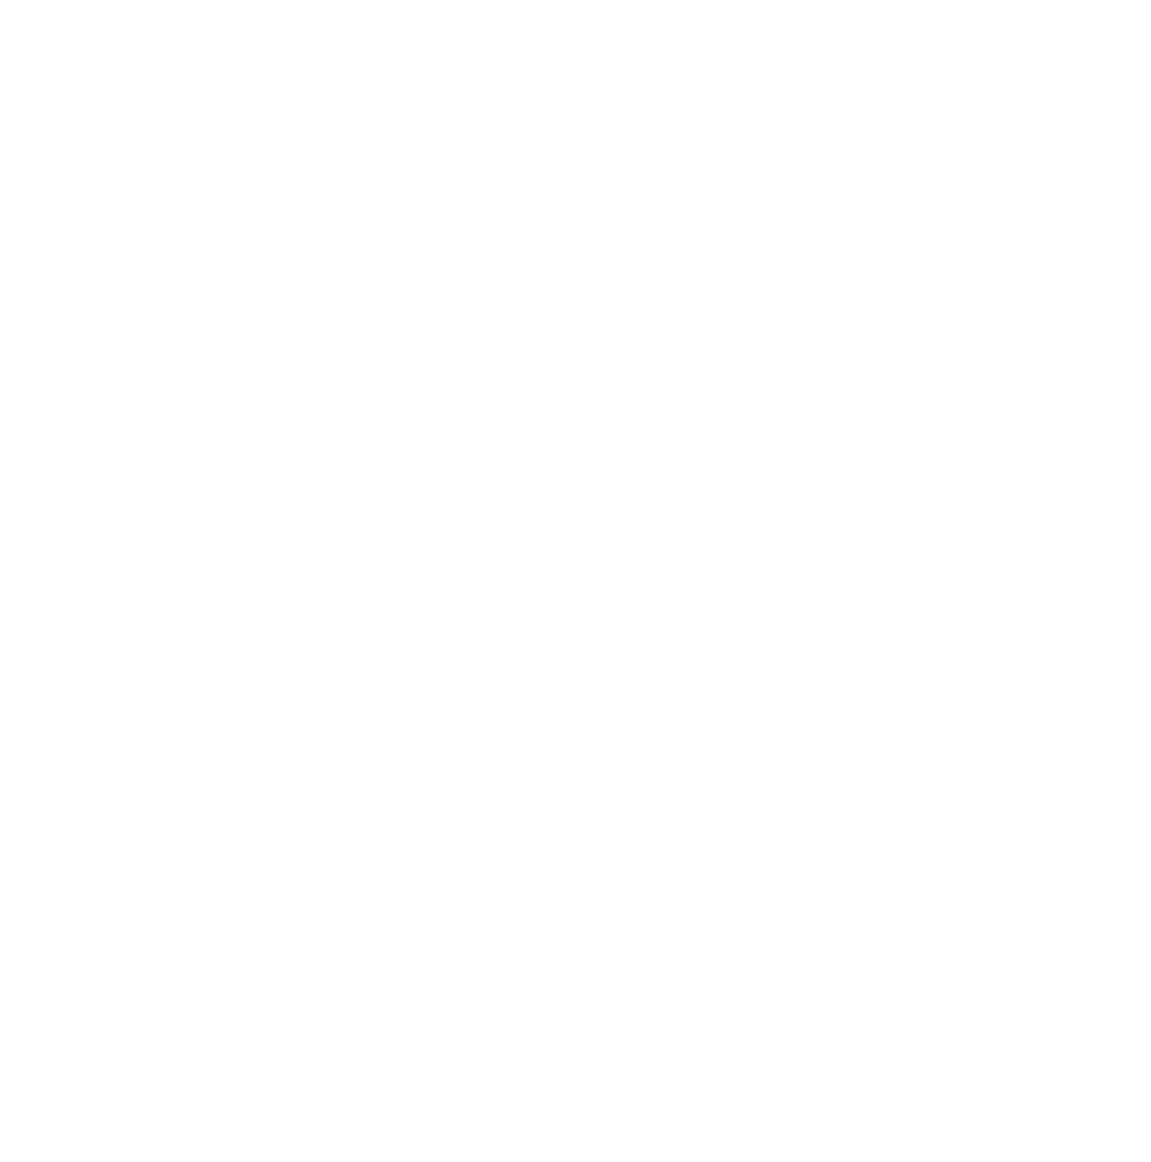 Polski Związek Łowiecki logo